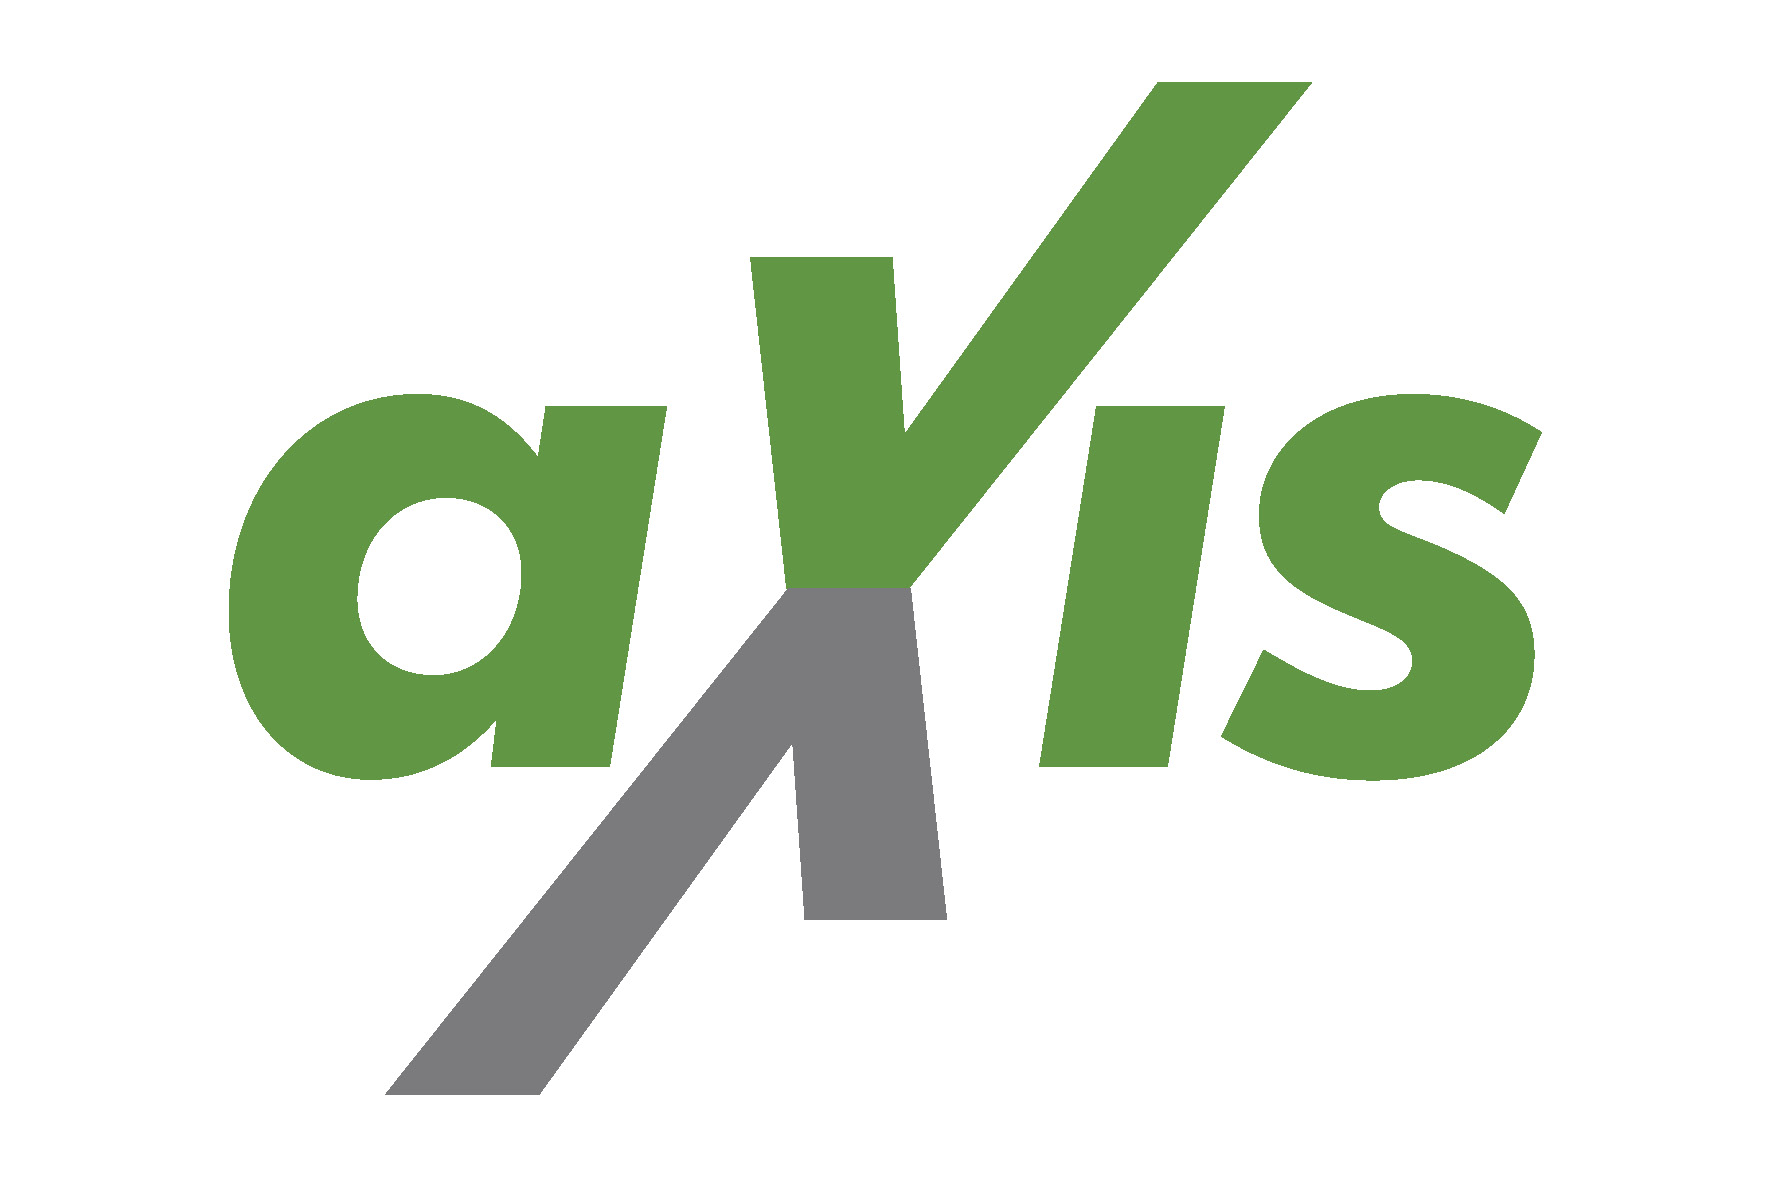 logo AXIS